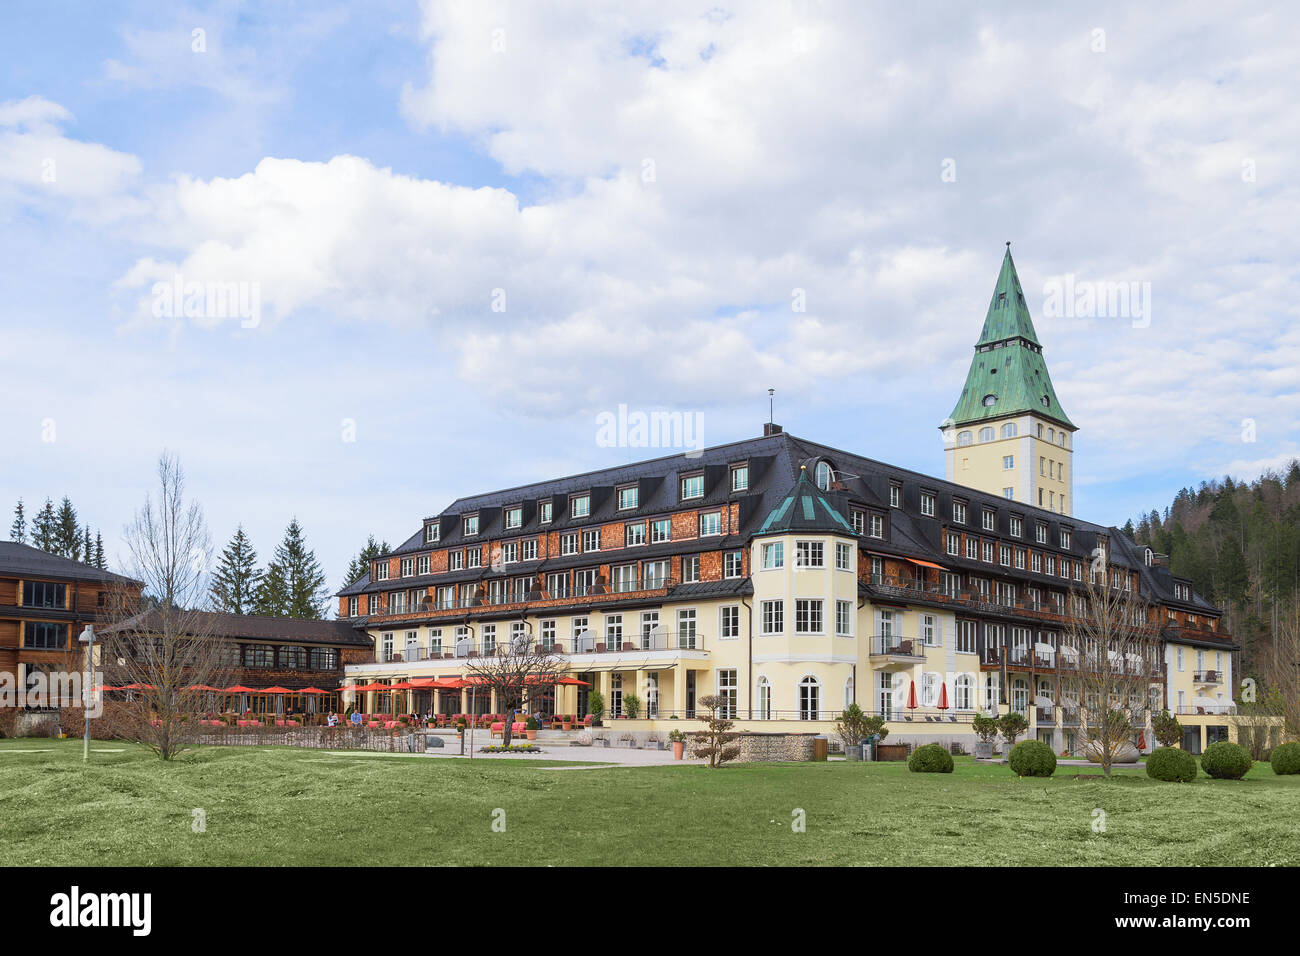 Les dirigeants du G7 'grande' sept pays membres se réuniront à l'hôtel Schloss Elmau luxury residence royal bavarois dans la vallée alpine. Banque D'Images